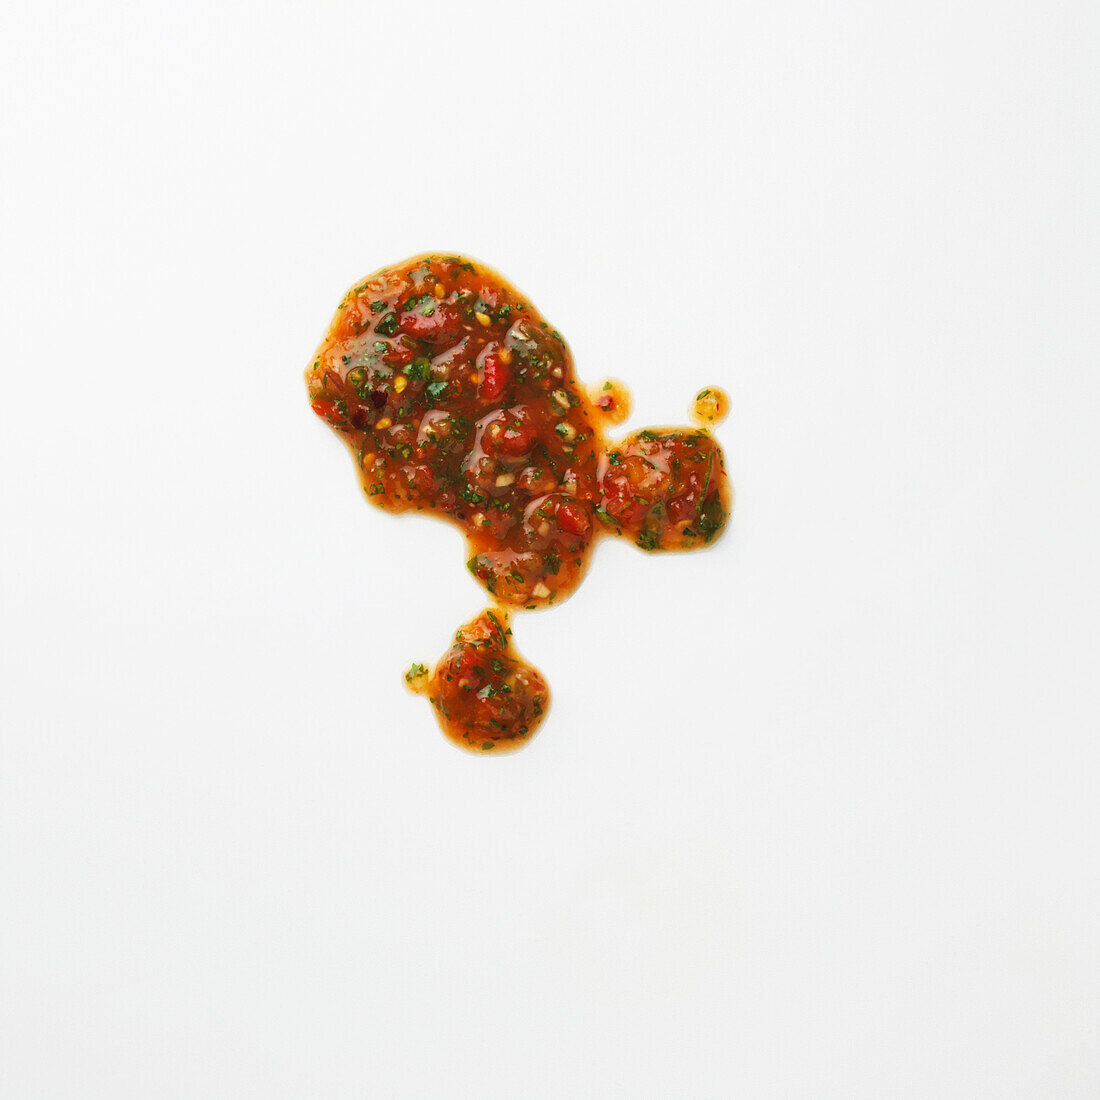 Splodge of chilli tomato sauce